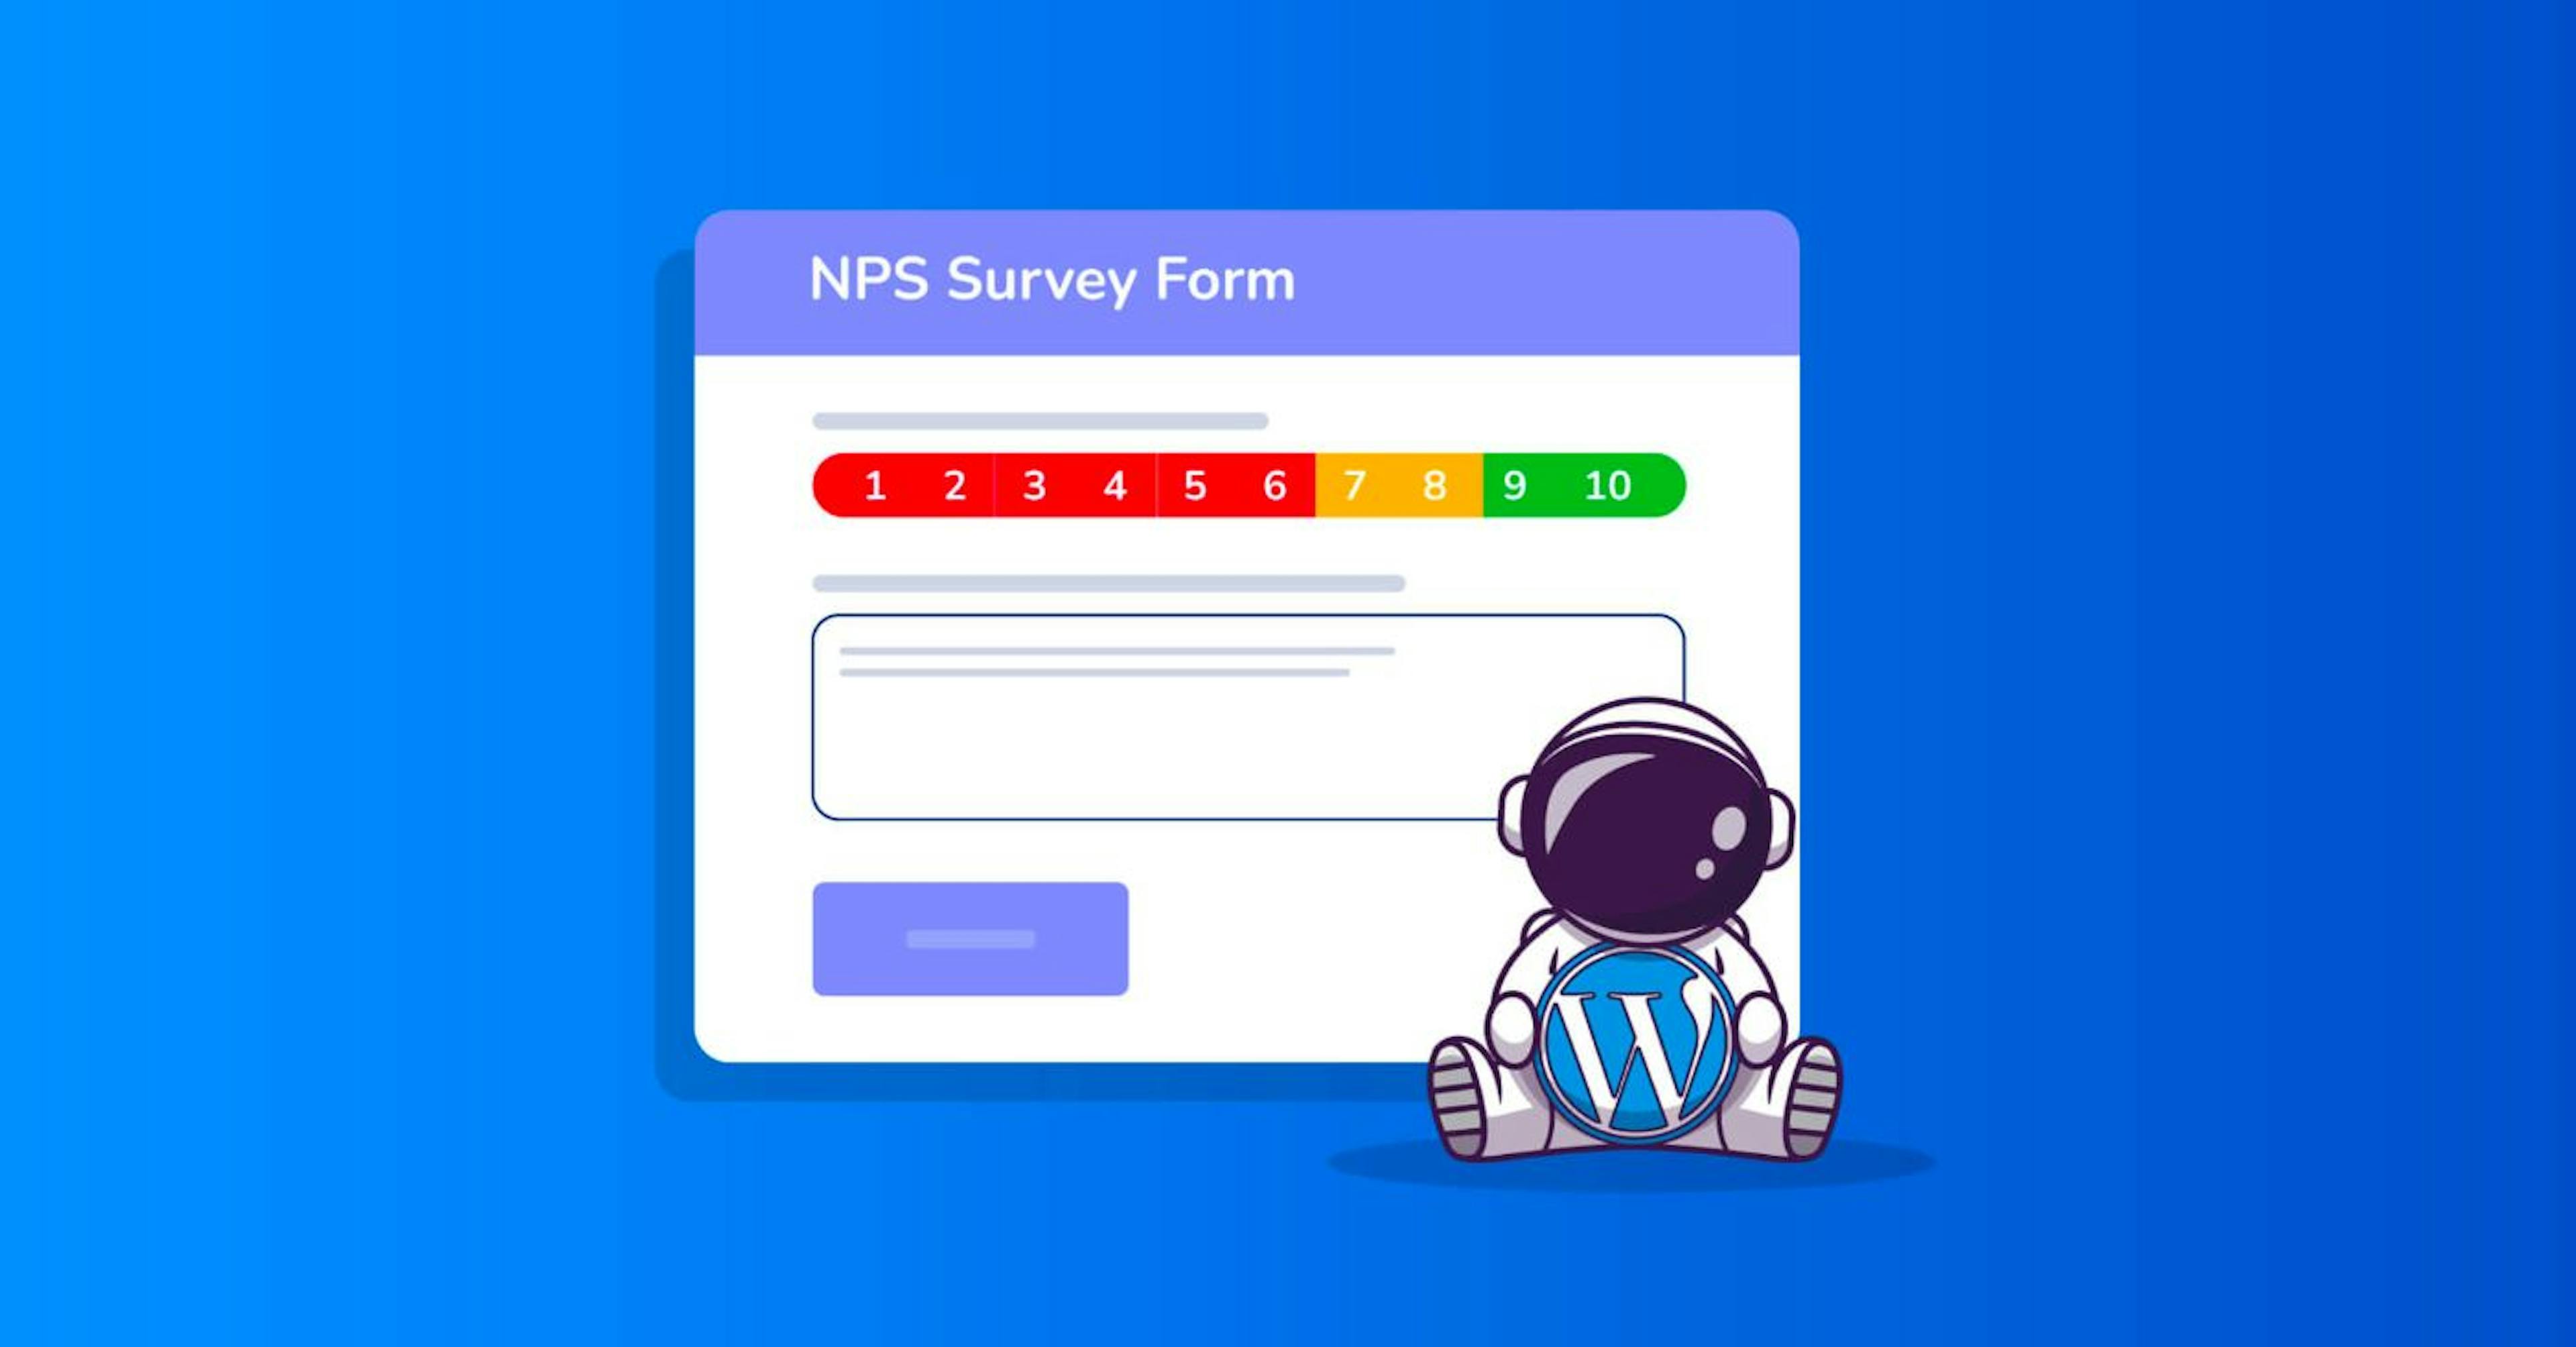 NPS 表单可能如下所示，具有从 0 到 10 的评级以及用于评论或反馈的文本字段。